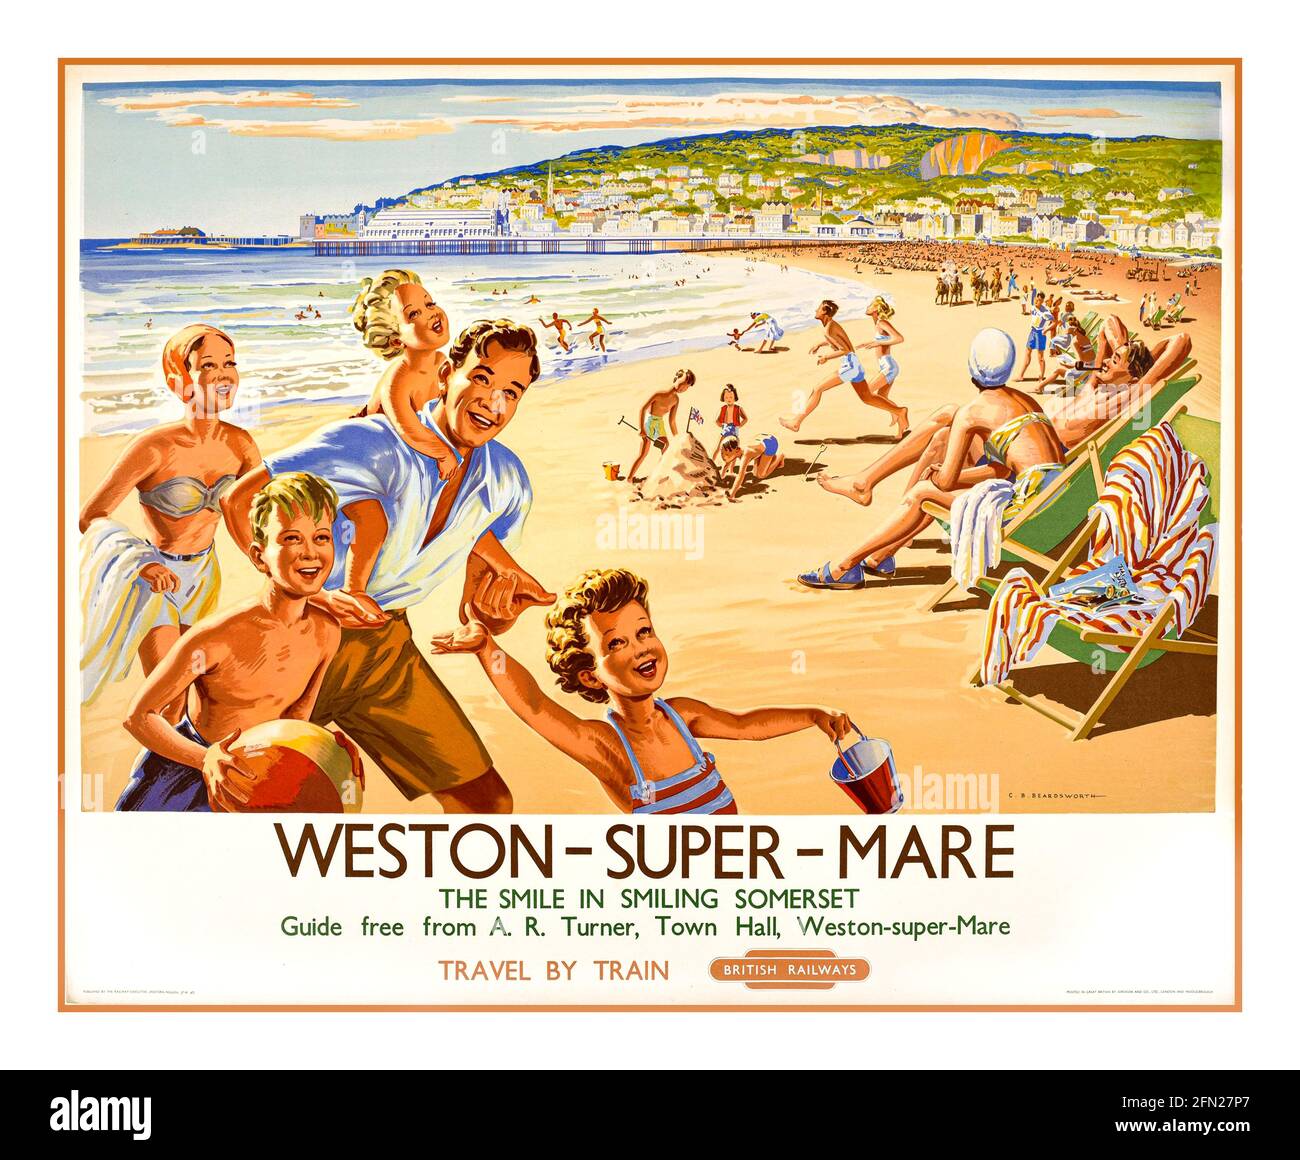 Vintage années 1950 Weston-super-Mare Railway affiche 1959 artiste : C B Beardsworth Weston-super-Mare. Le sourire dans le Somerset souriant. Guide gratuit de A.R. Turner, hôtel de ville, Weston-super-Mare. Voyagez en train. Chemins de fer britanniques. Banque D'Images